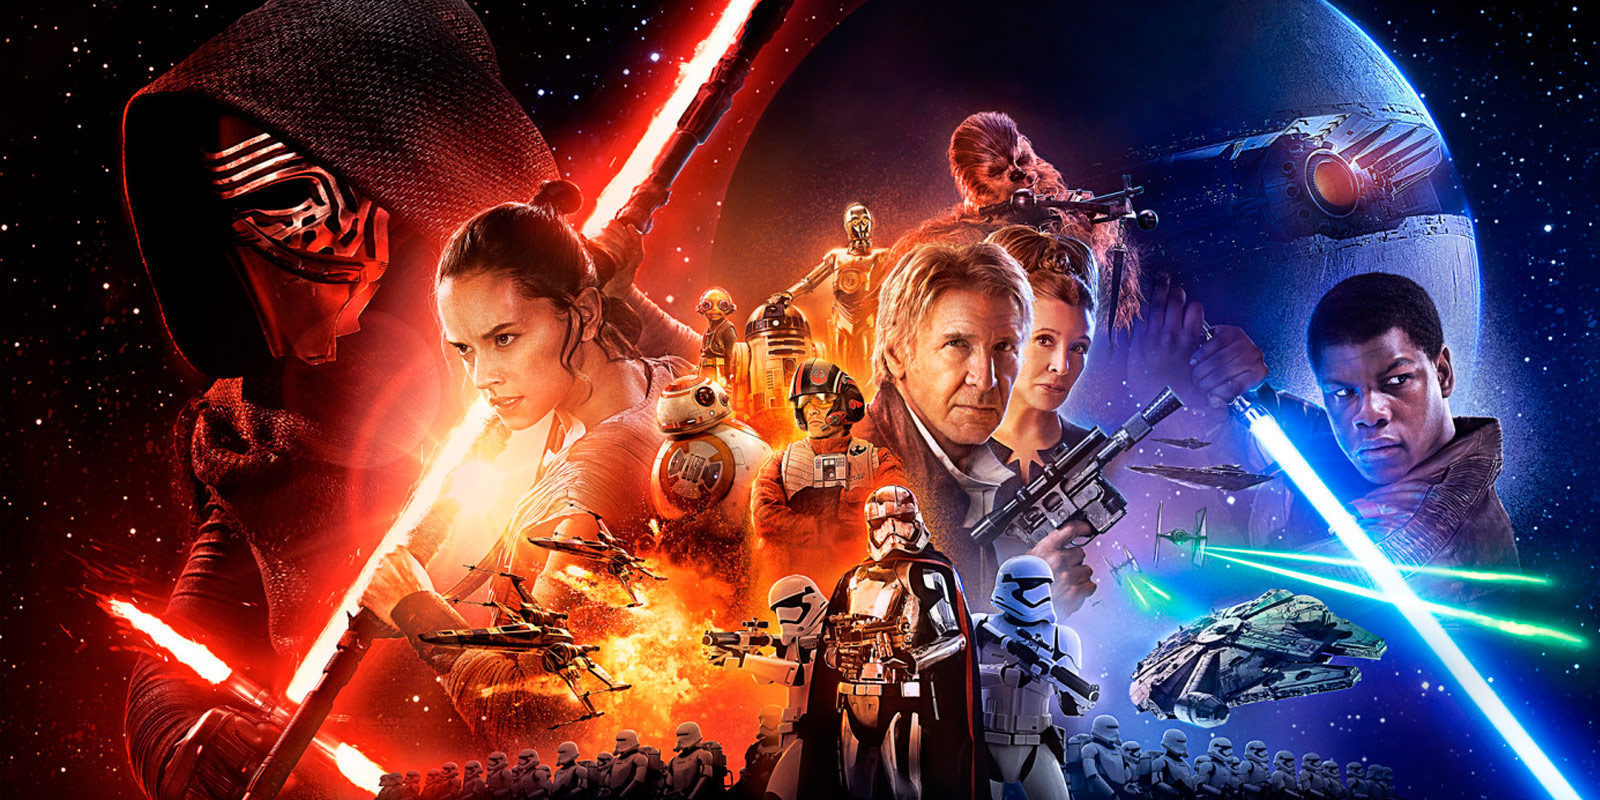 ¿Es Luke Skywalker El Último Jedi? - Teorías sobre 'Star Wars: Episodio VIII - The Last Jedi'